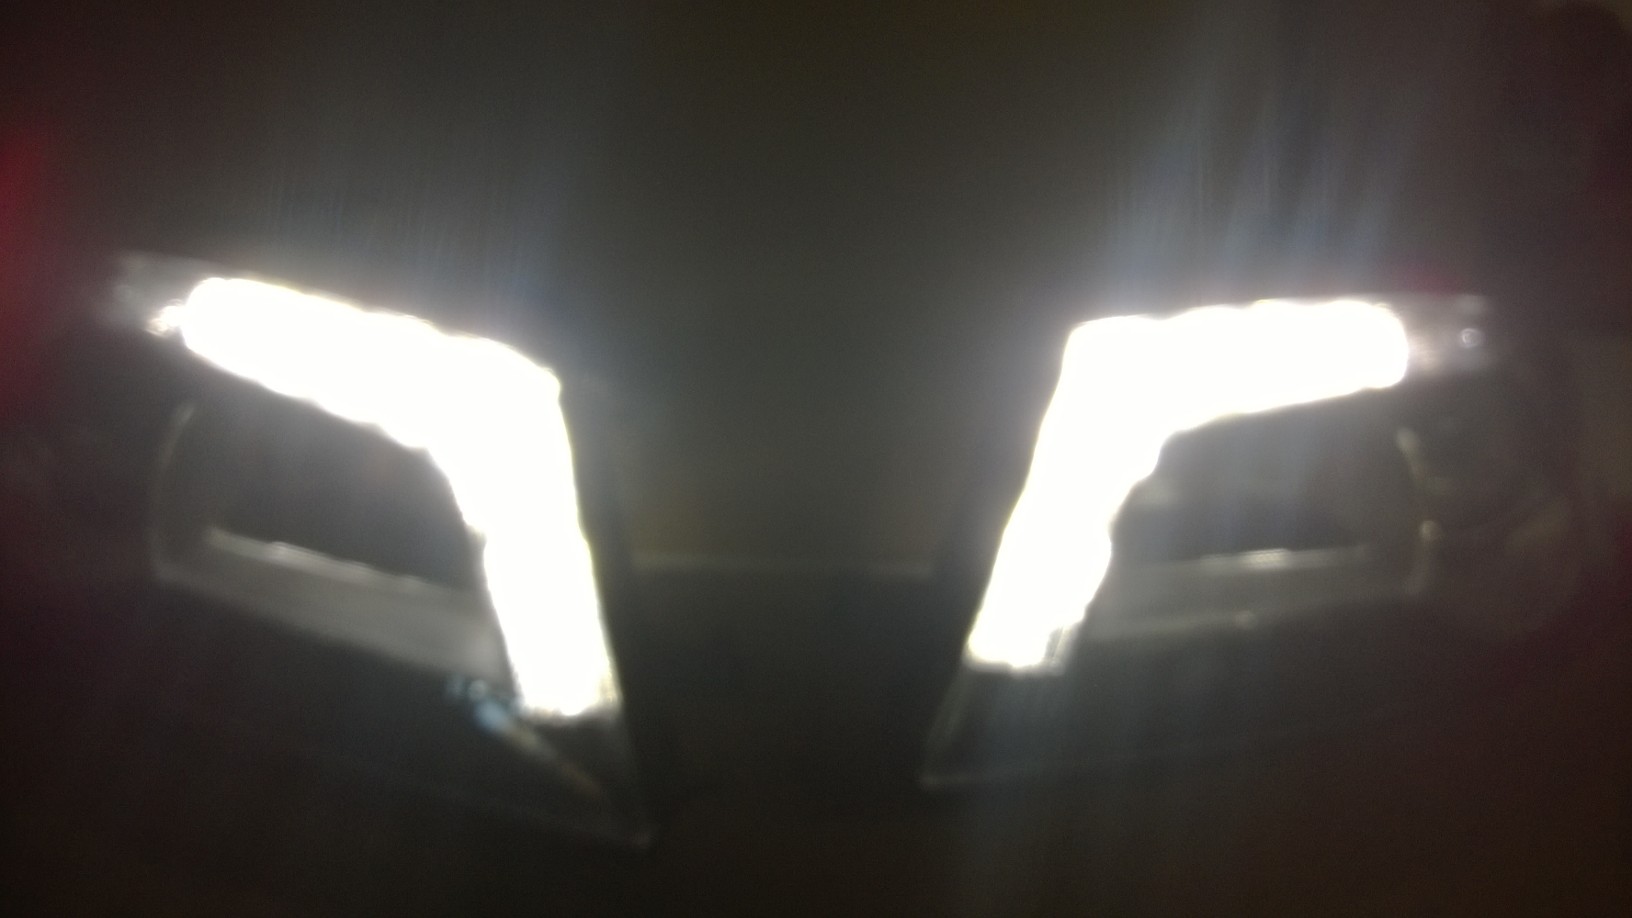 Regeneracja lamp Audi A3 DRL LED